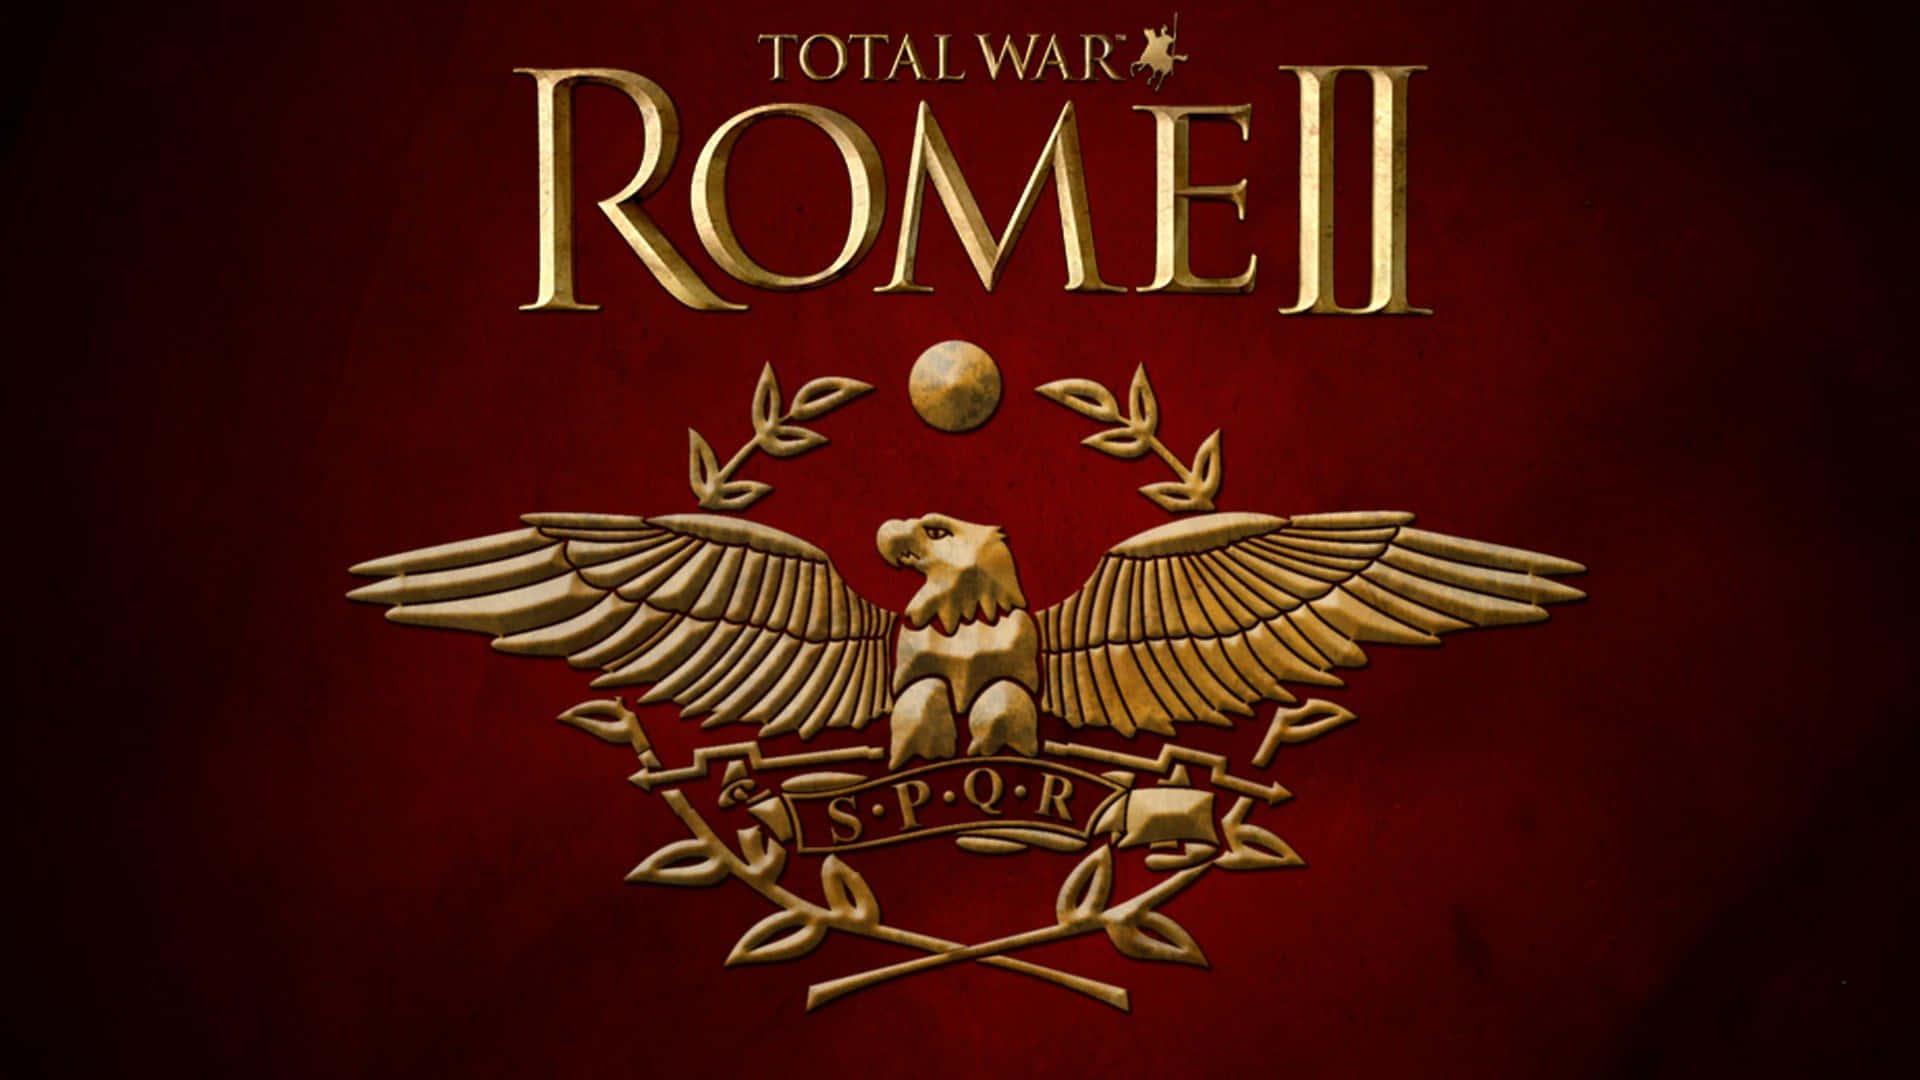 Migliorsfondo Di Total War Rome 2 In Rosso